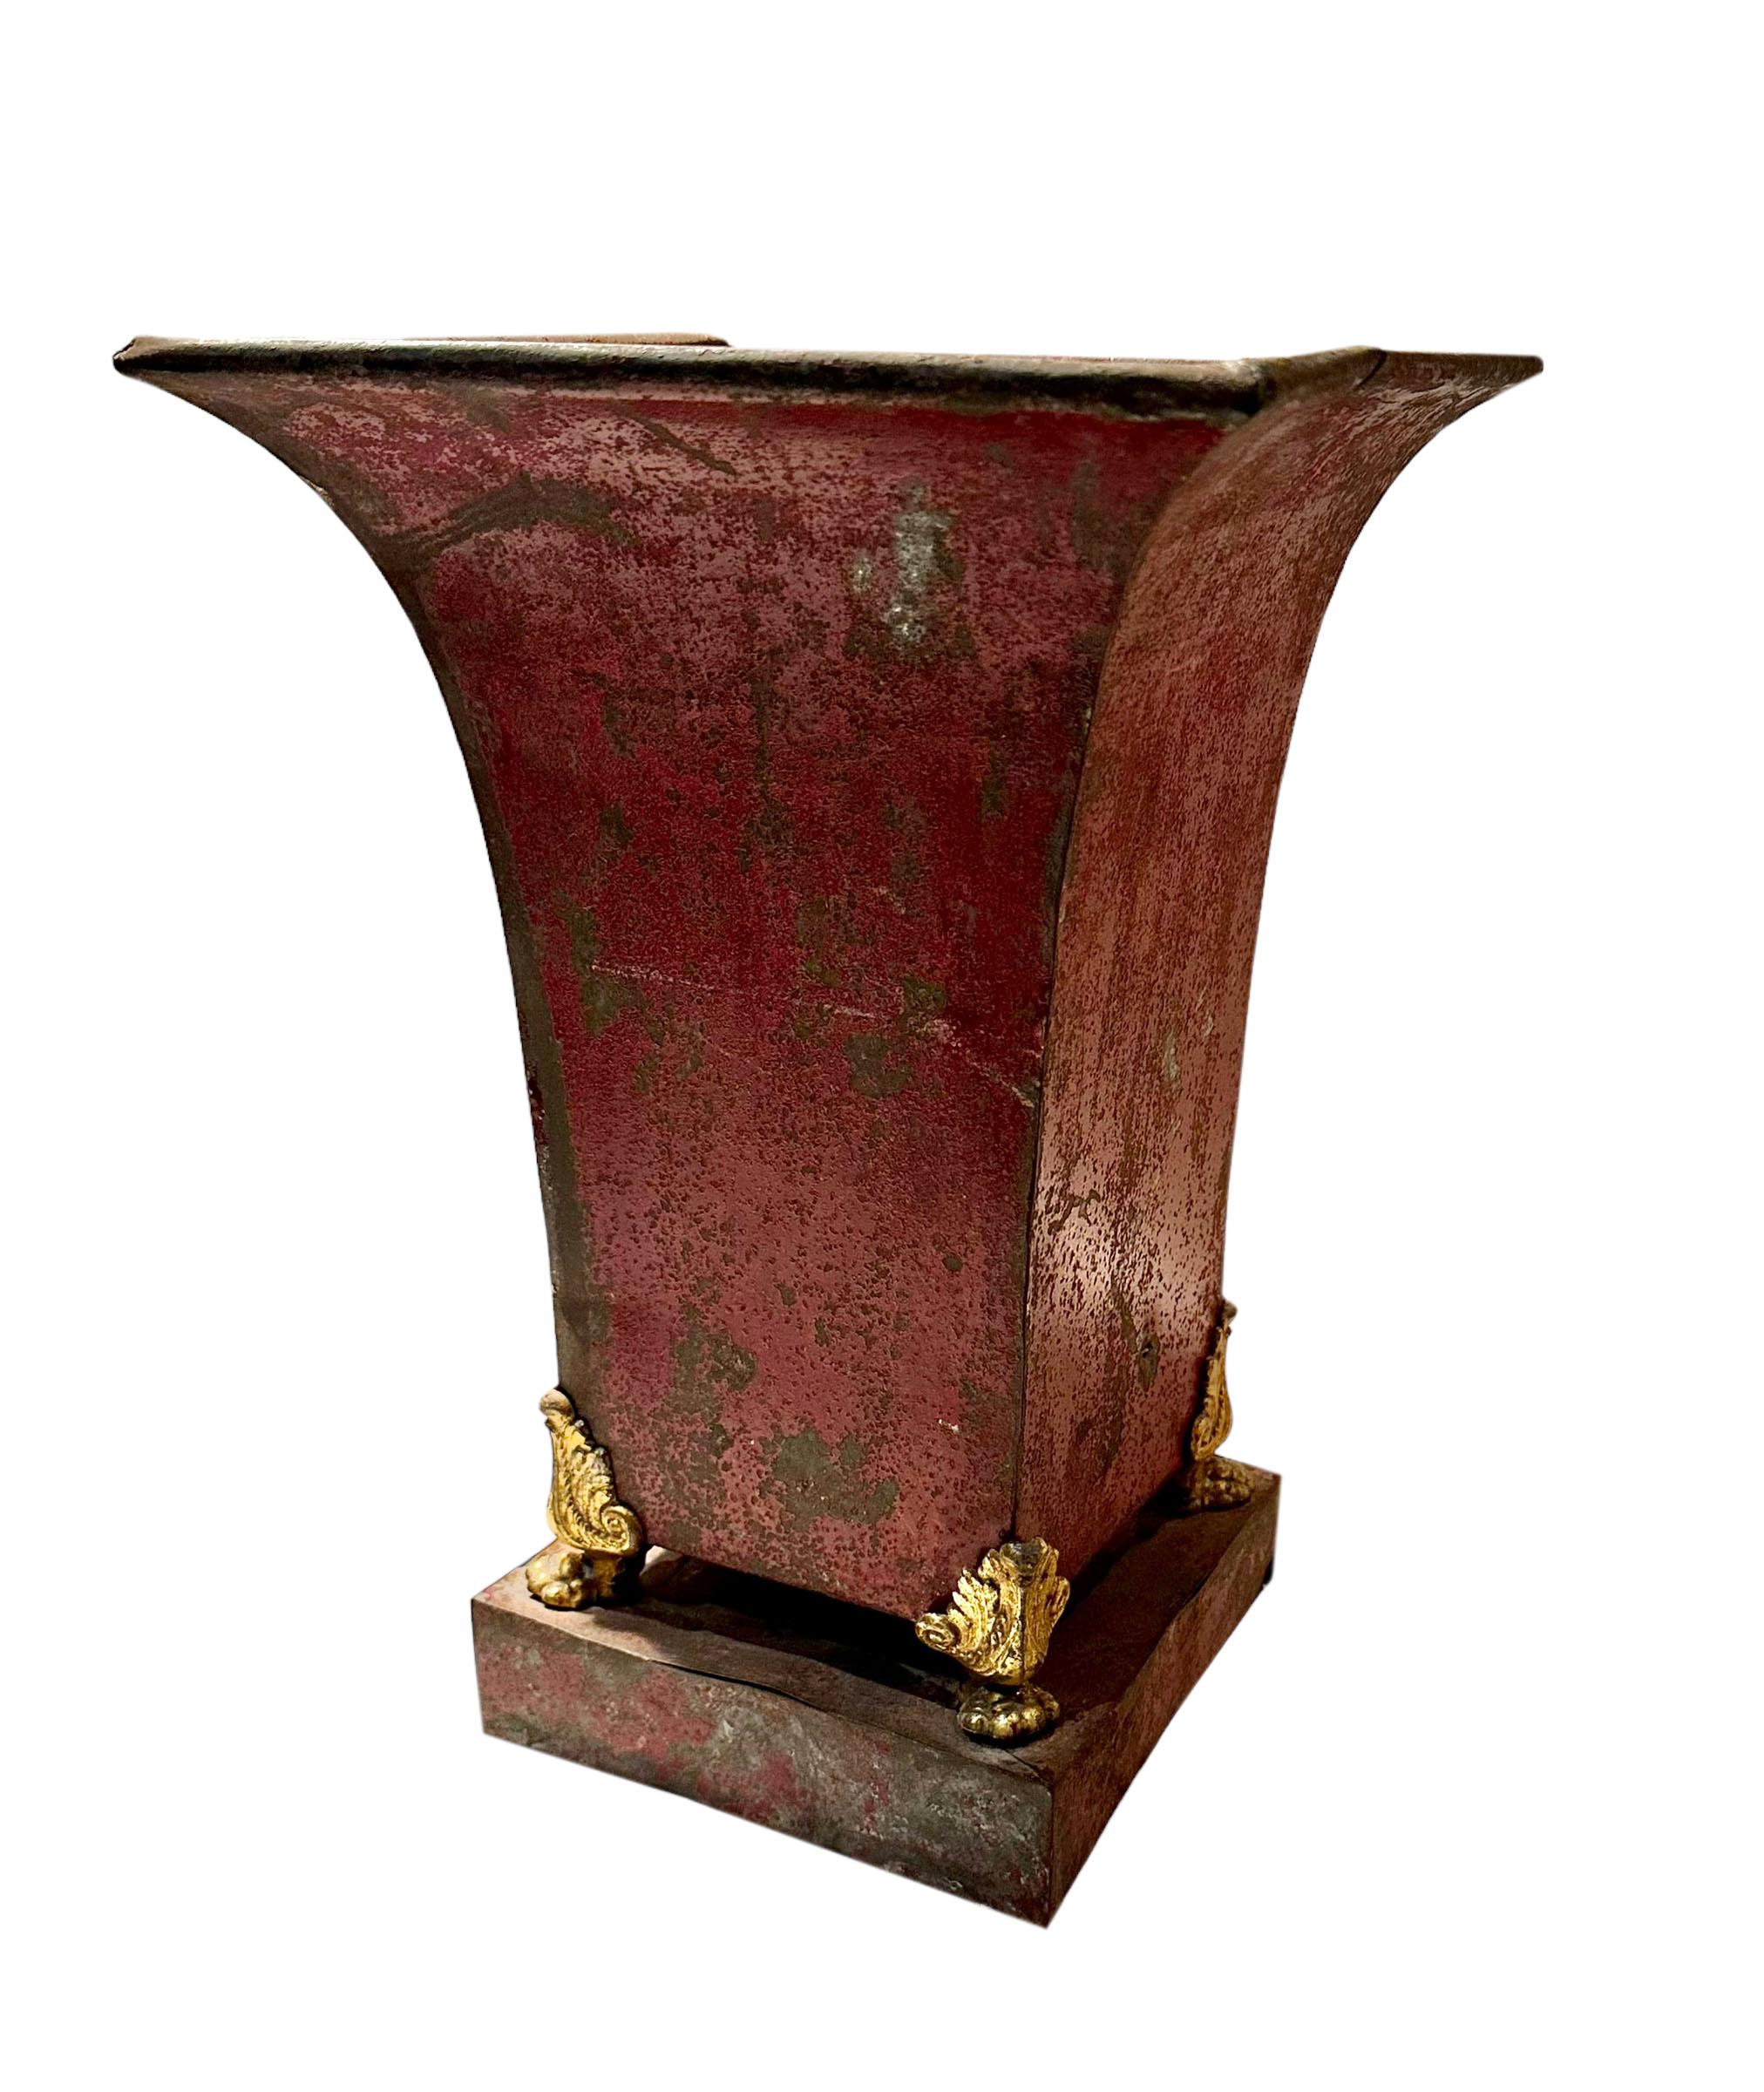 Eine originale Urne mit roter Farbe und bronzenen Löwenfüßen. Hat eine Menge von Patina mit einigen Fragen Zustand, sondern sieht sensationell sowieso. Der Schaden beeinträchtigt es nicht, es hat viel Charme, so wie es ist. Anfang 19. Jahrhundert,